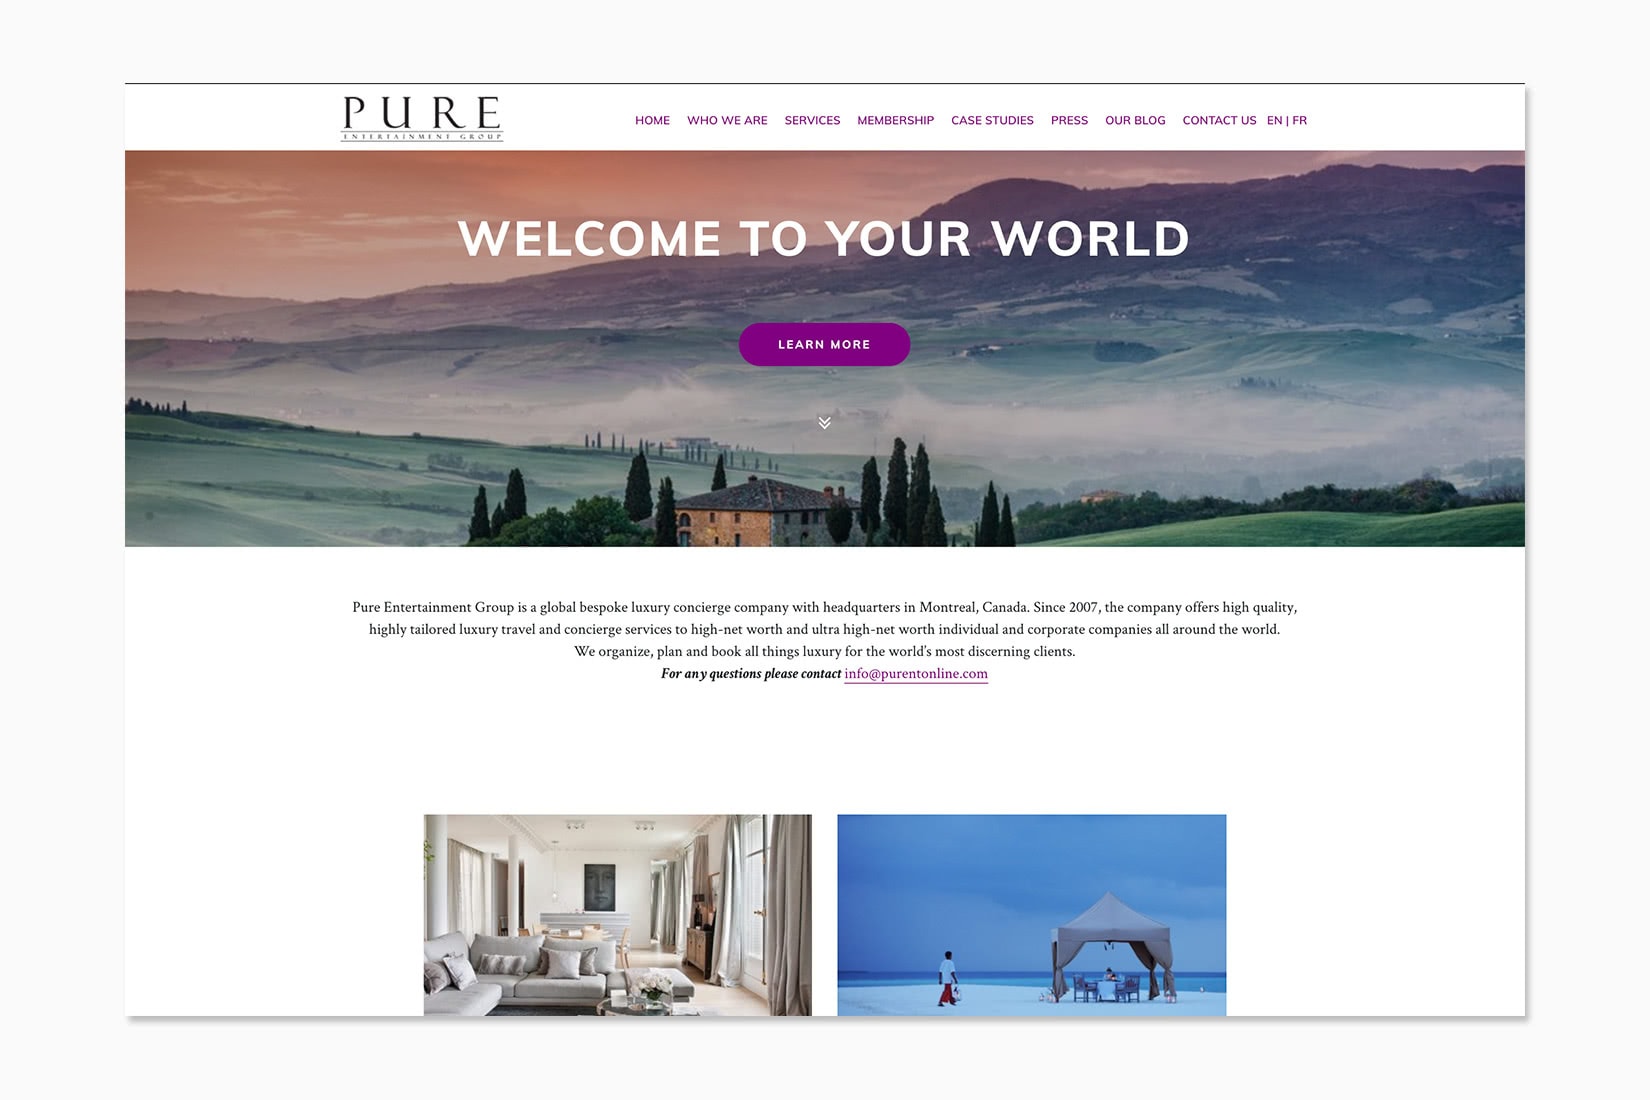 Le meilleur service de conciergerie de luxe : Pure Entertainment Group - Luxe Digital